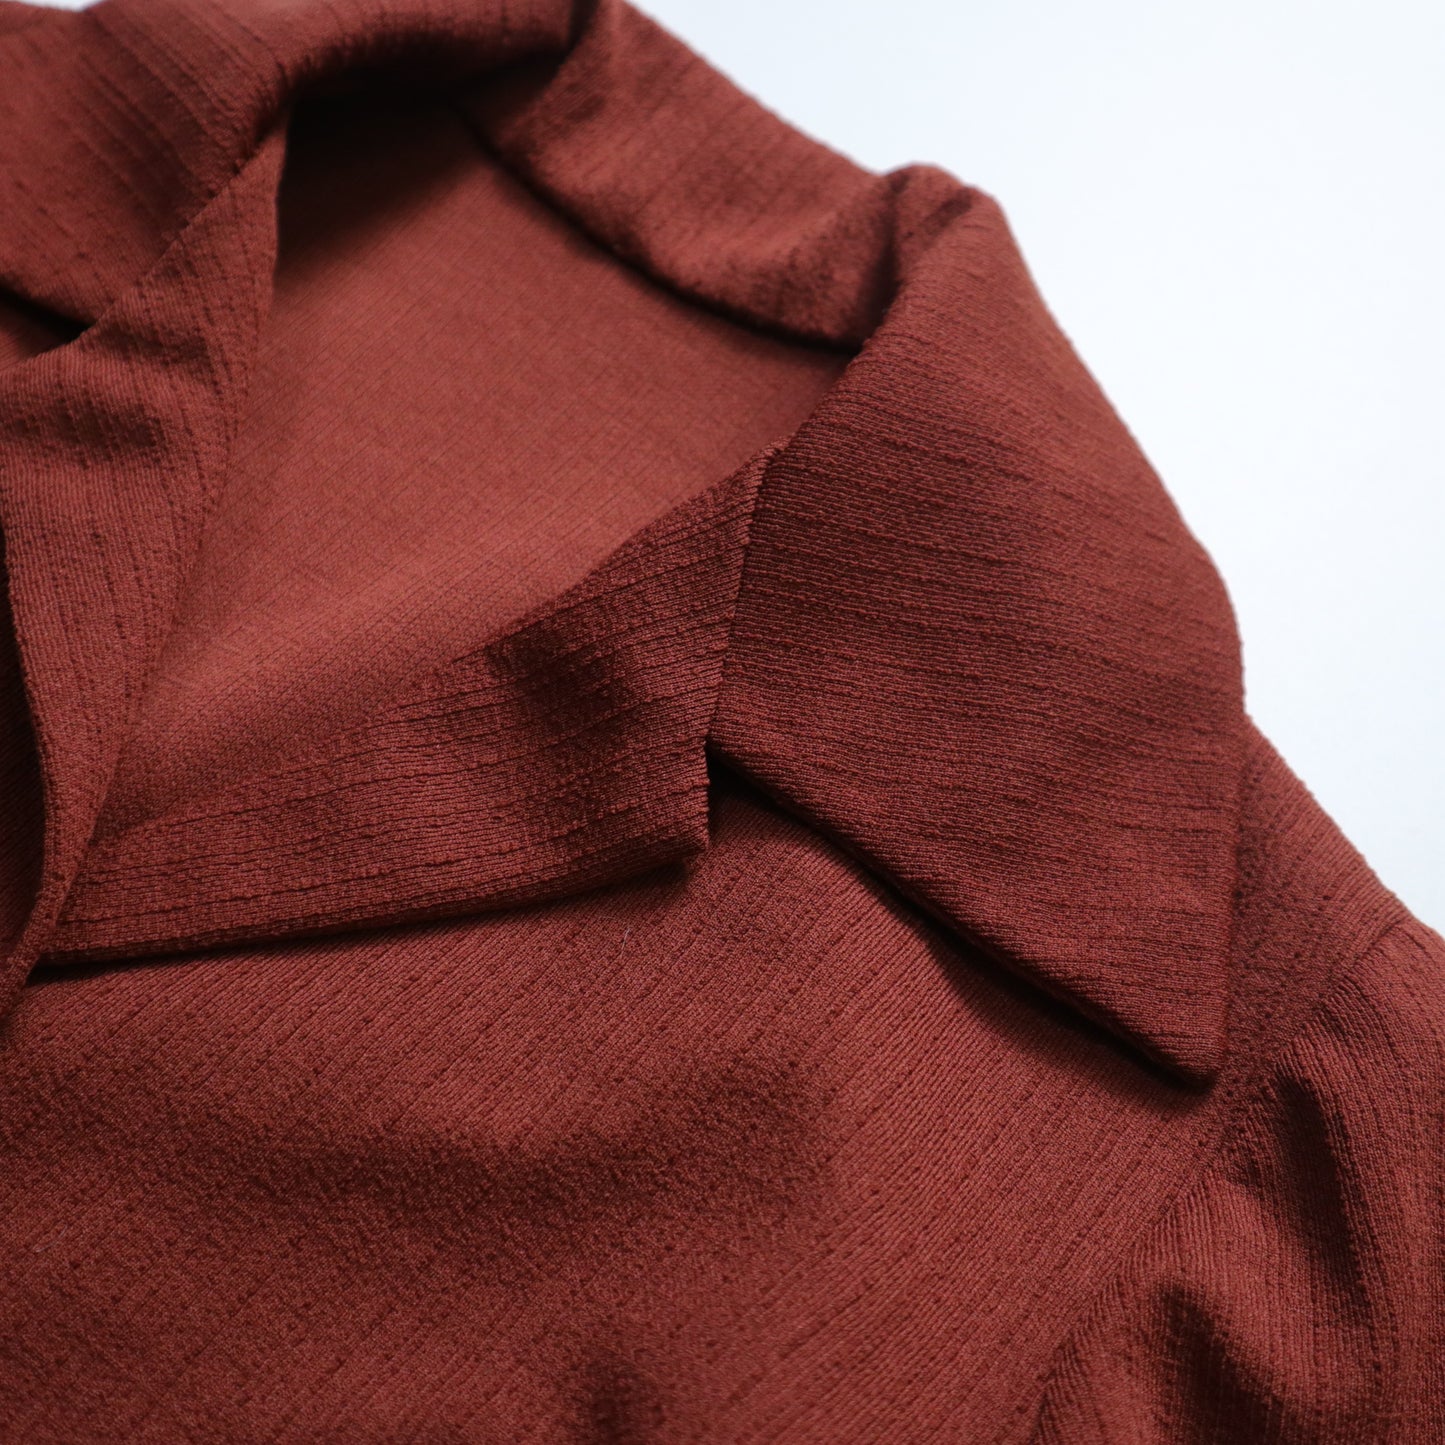 1970s brick red plain cardigan arrow collar shirt